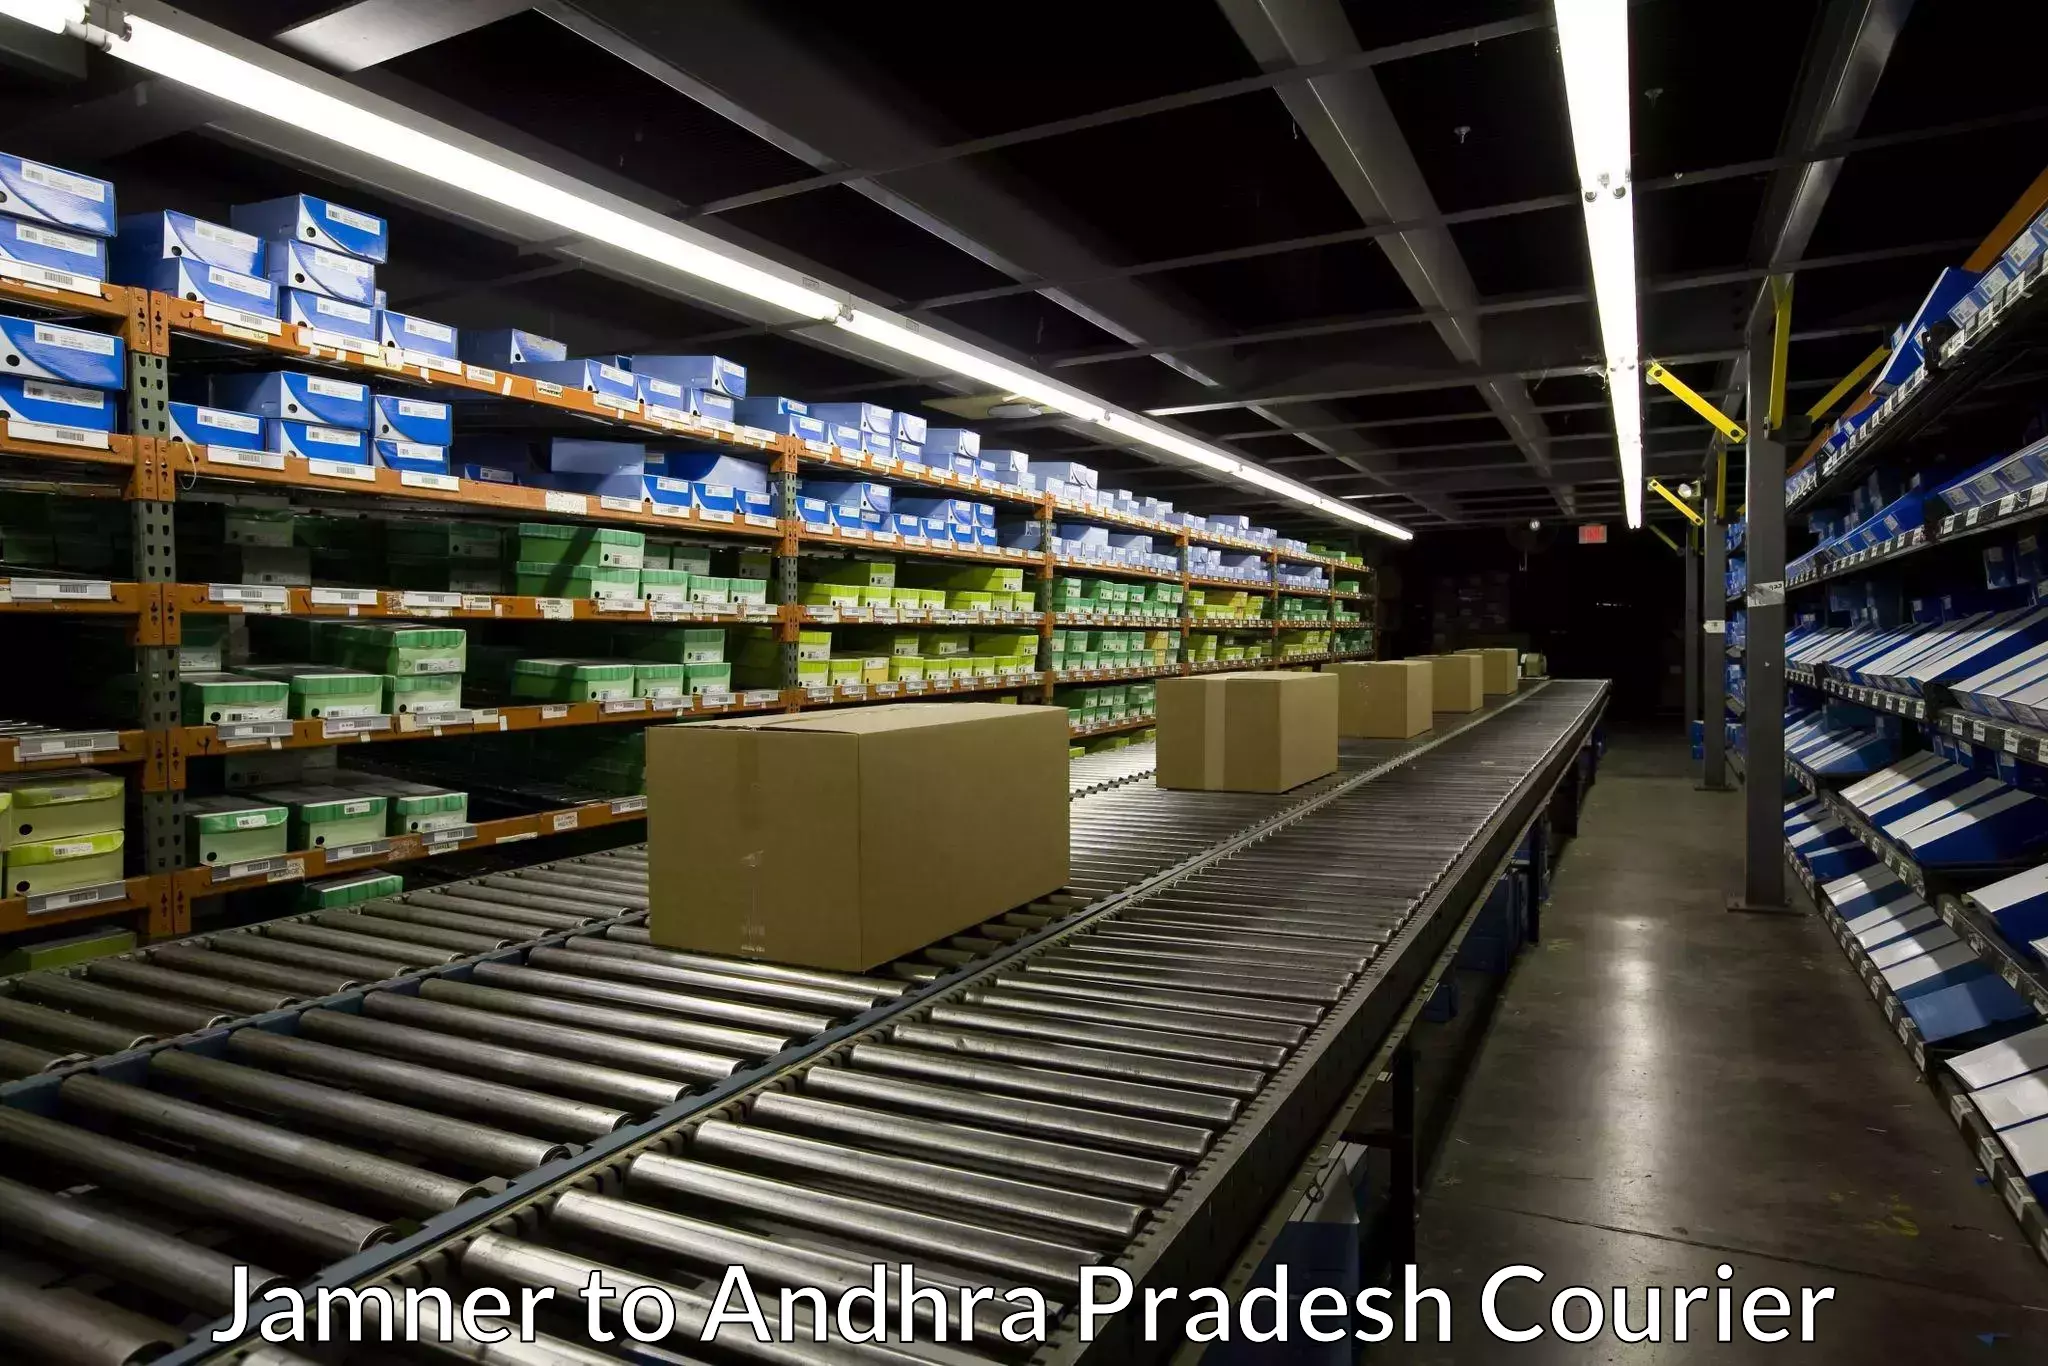 Nationwide parcel services Jamner to Andhra Pradesh